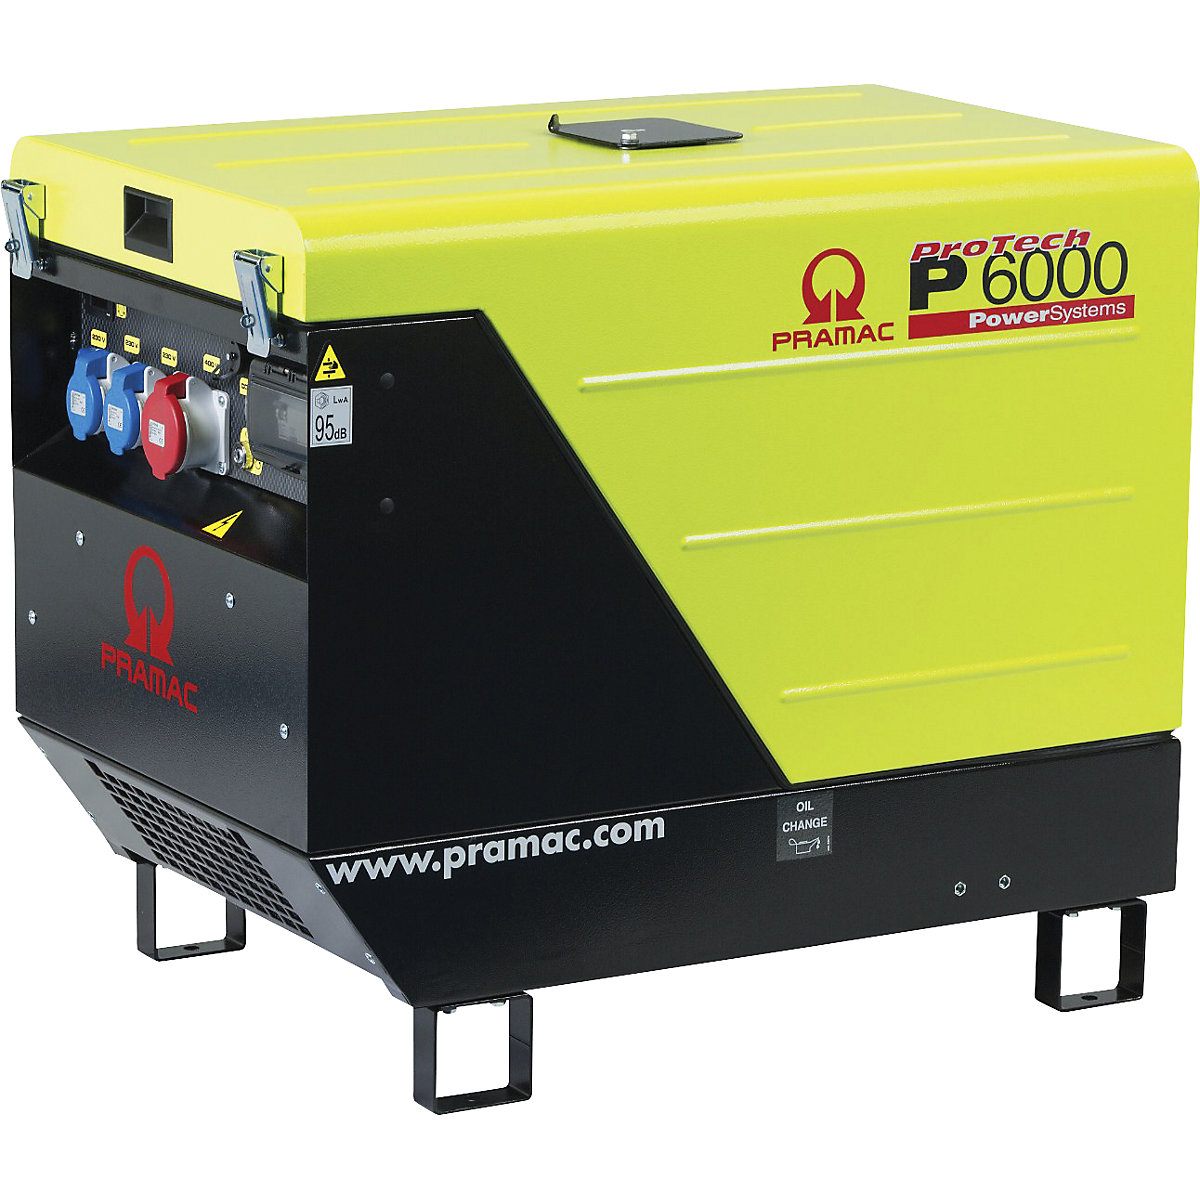 Generador eléctrico serie P, diésel, 400 / 230 V - Pramac